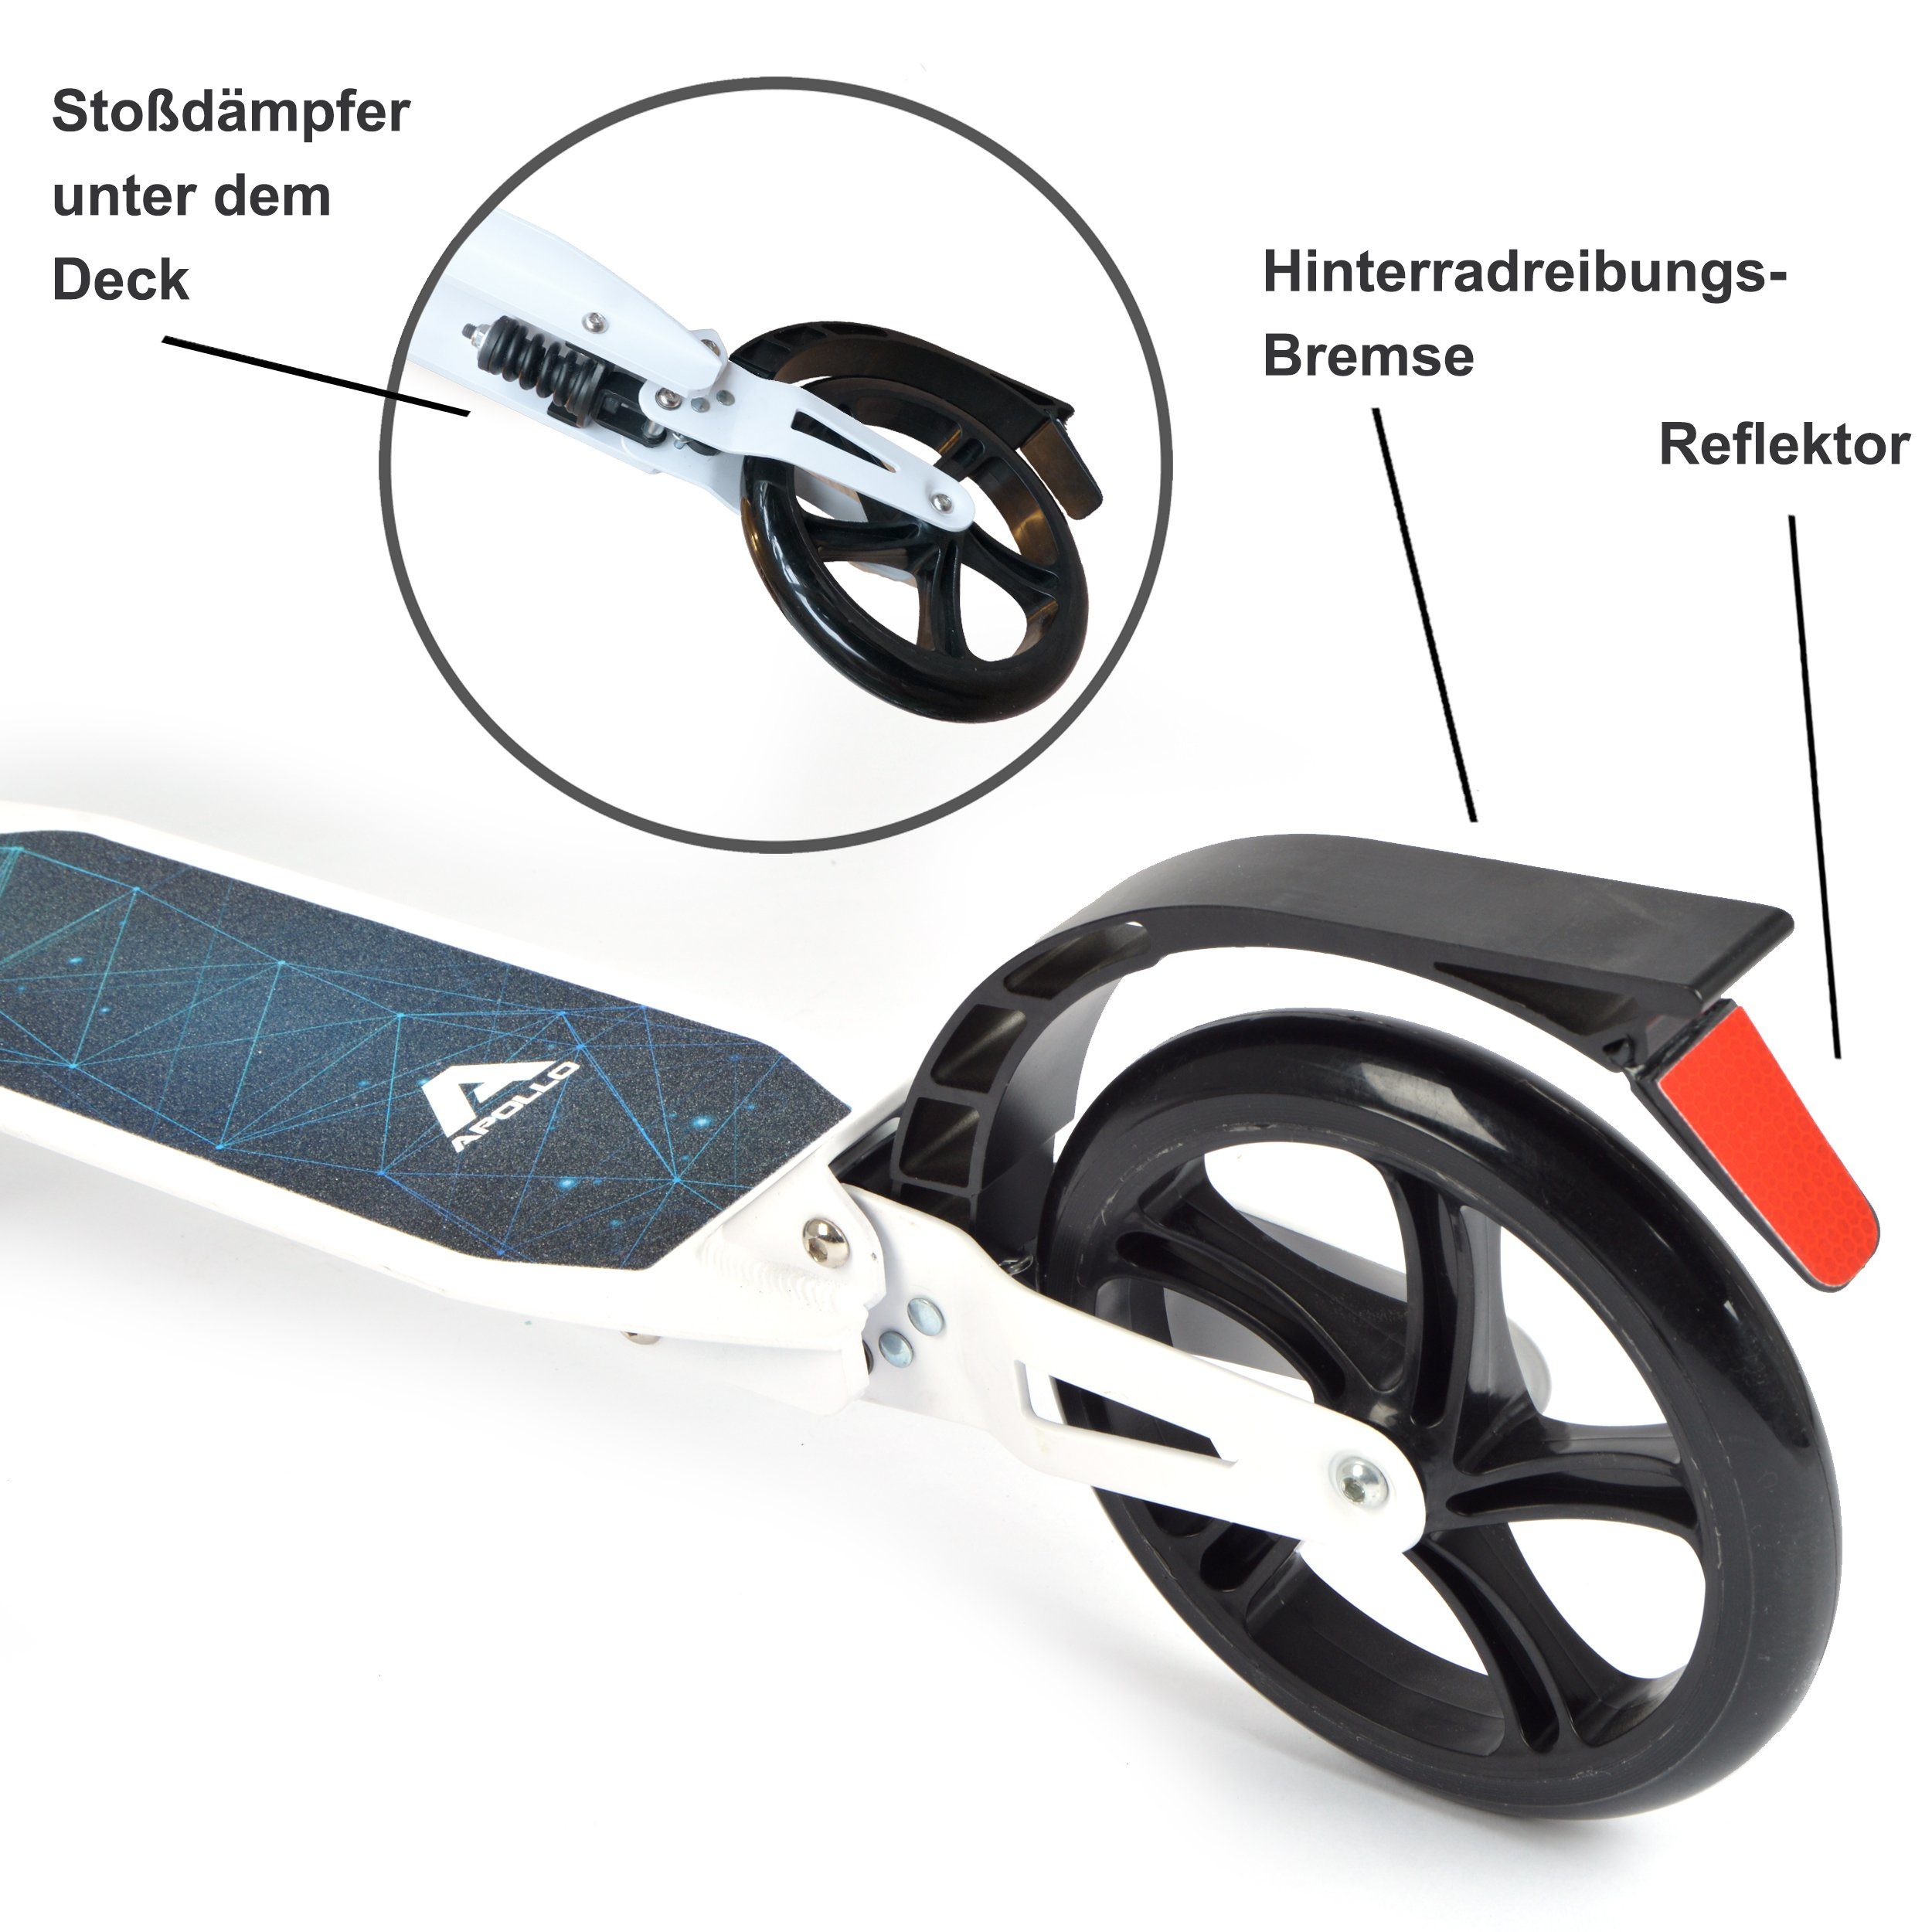 Sport Scooter Apollo Cityroller Spectre Pro - Sphere, klapp- und höhenverstellbar